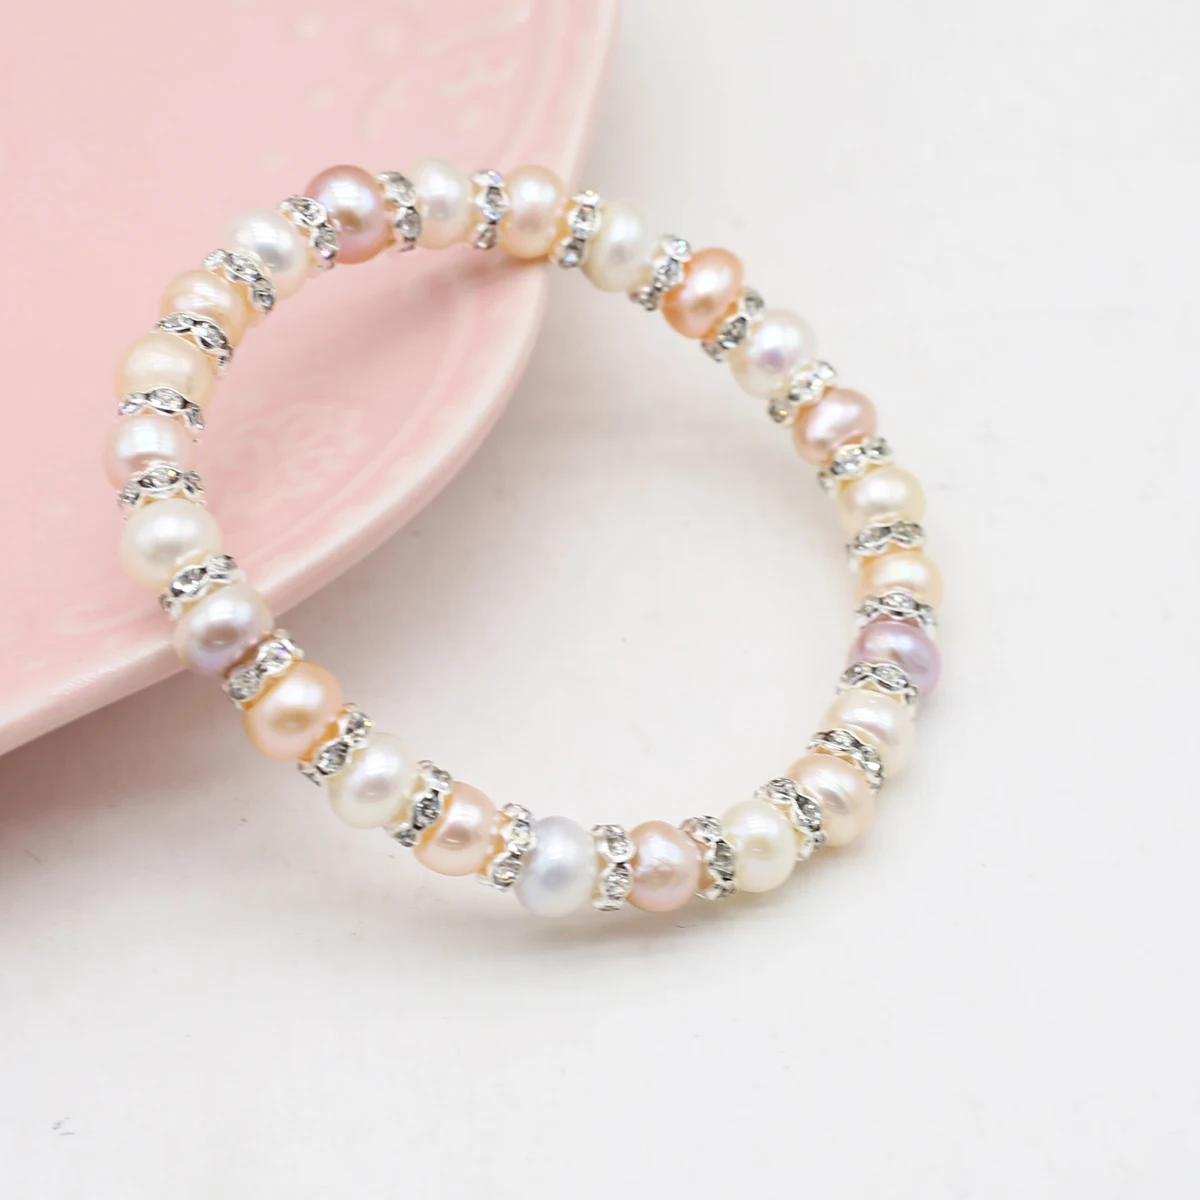 

Crystal Bracelet With Septum Natural Freshwater Pearl Bracelet Elastic Thread For Women Romantic Love Gift